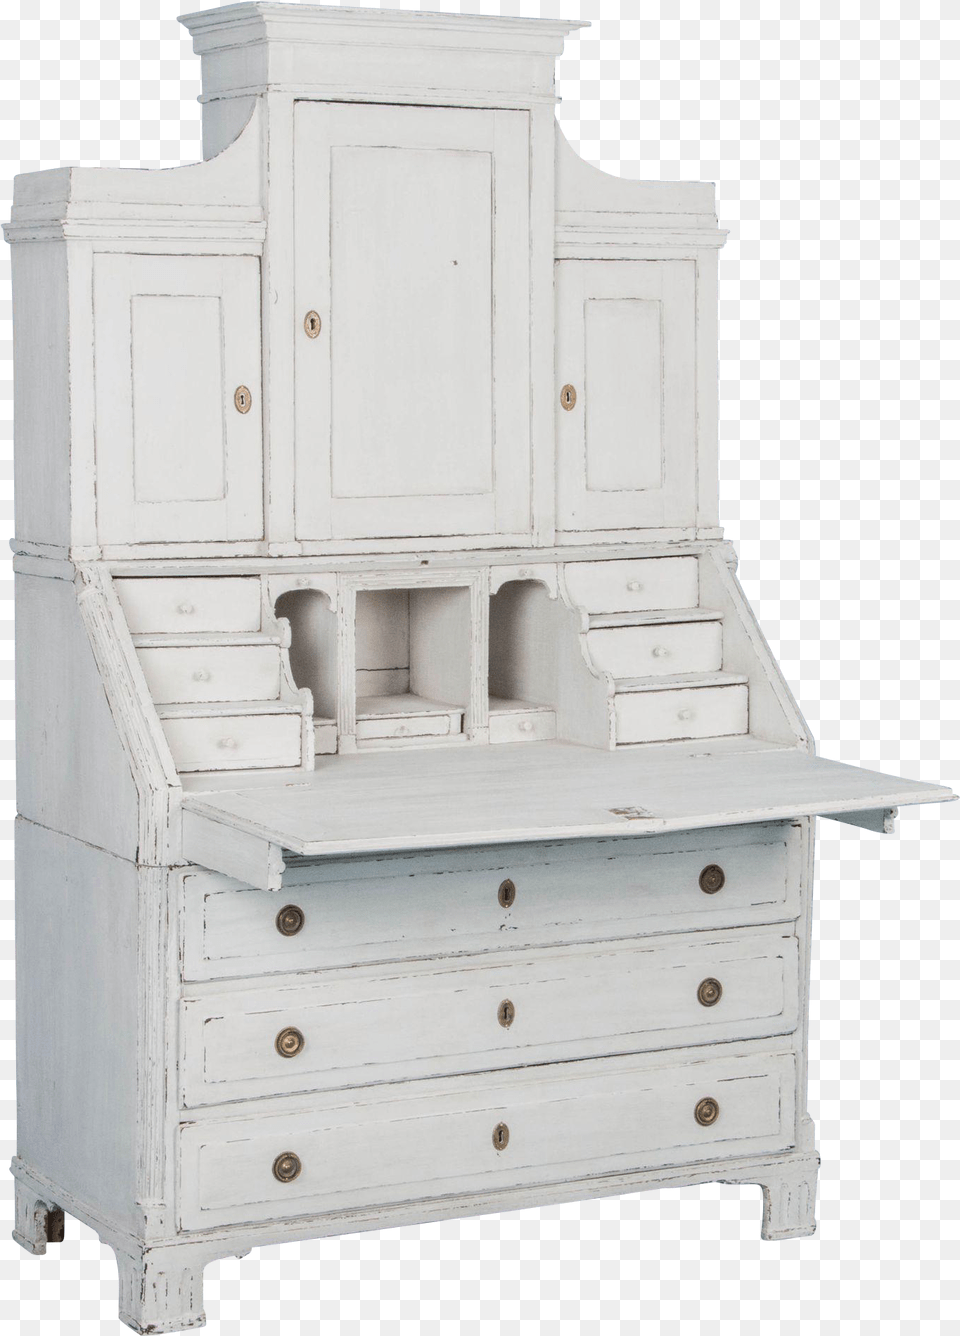 Graceful Swedish Antique Secretary Dresser, Cabinet, Furniture, Table, Desk Free Transparent Png